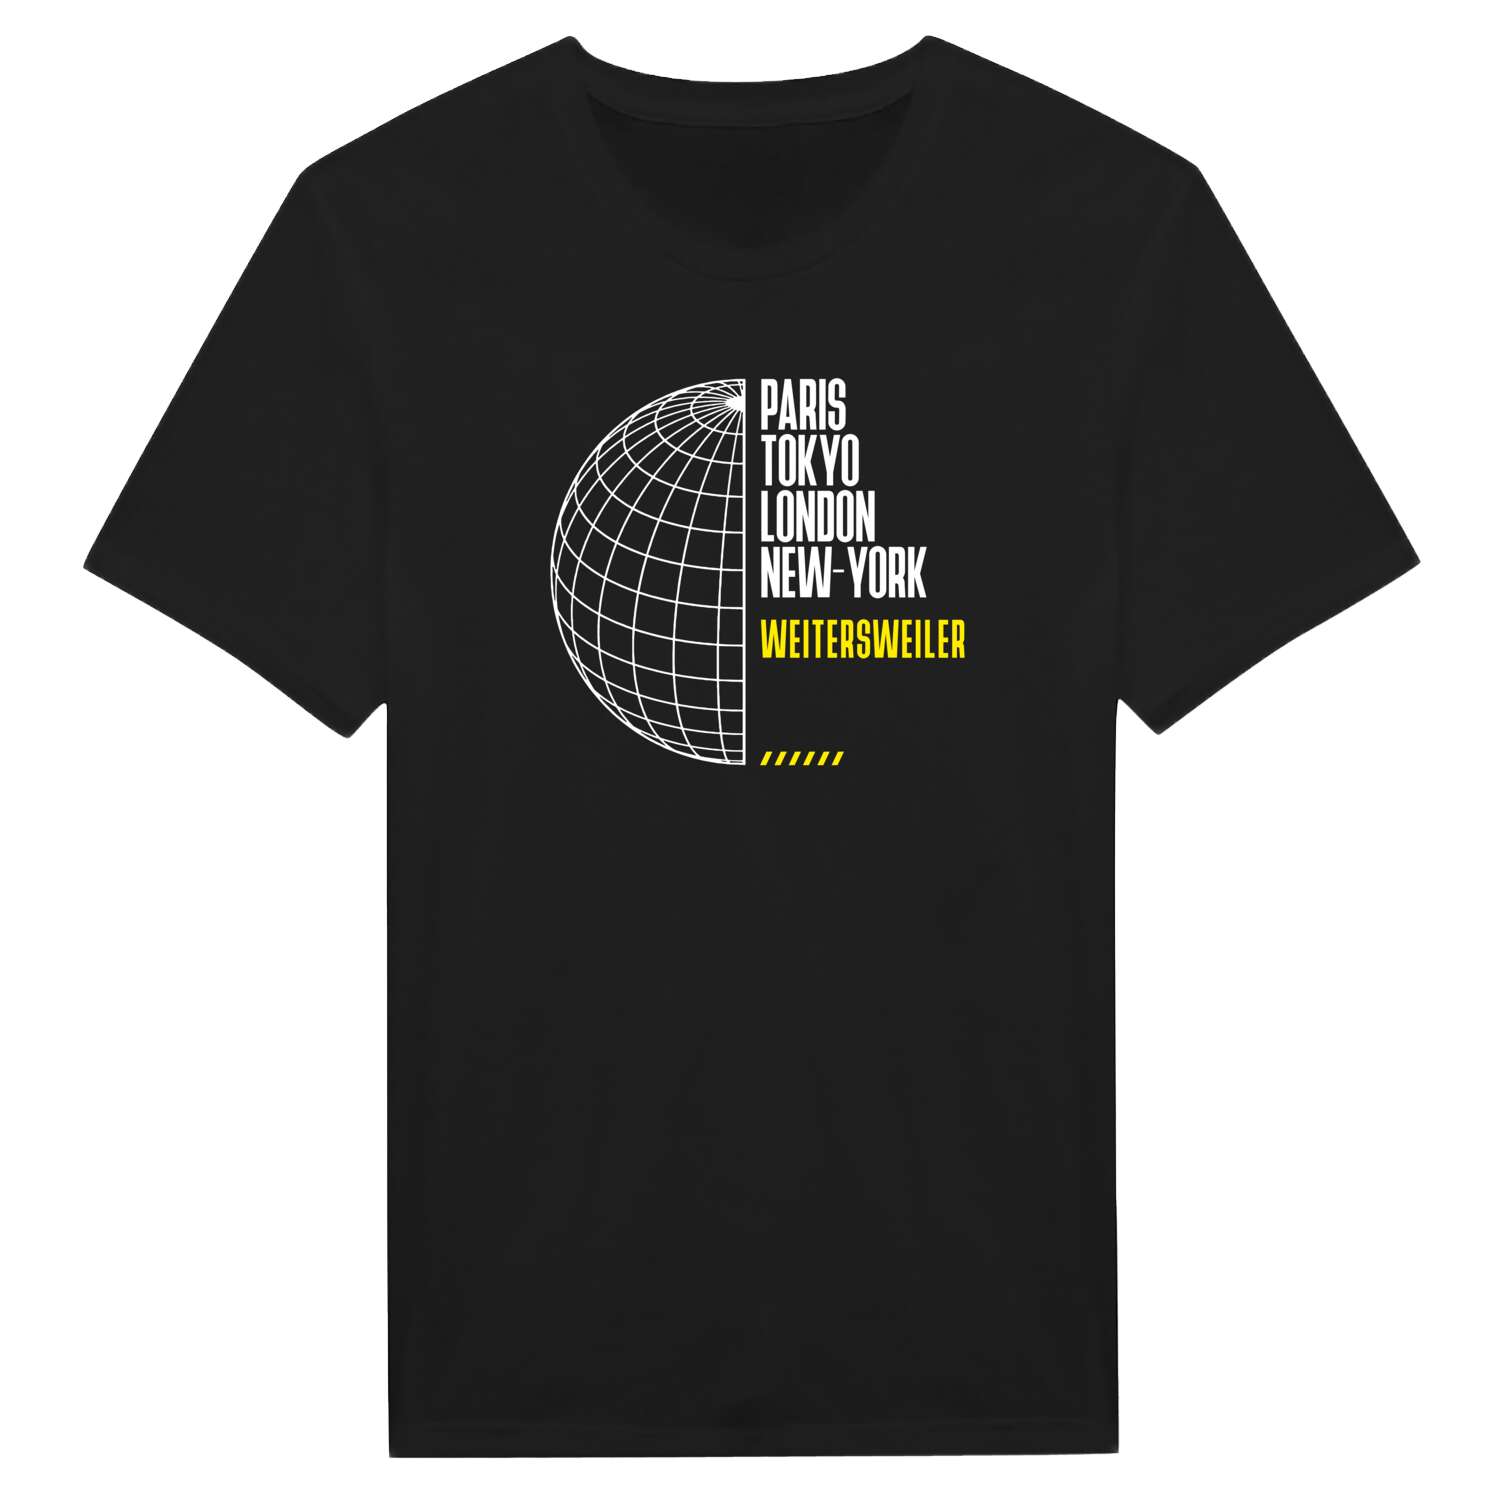 Weitersweiler T-Shirt »Paris Tokyo London«